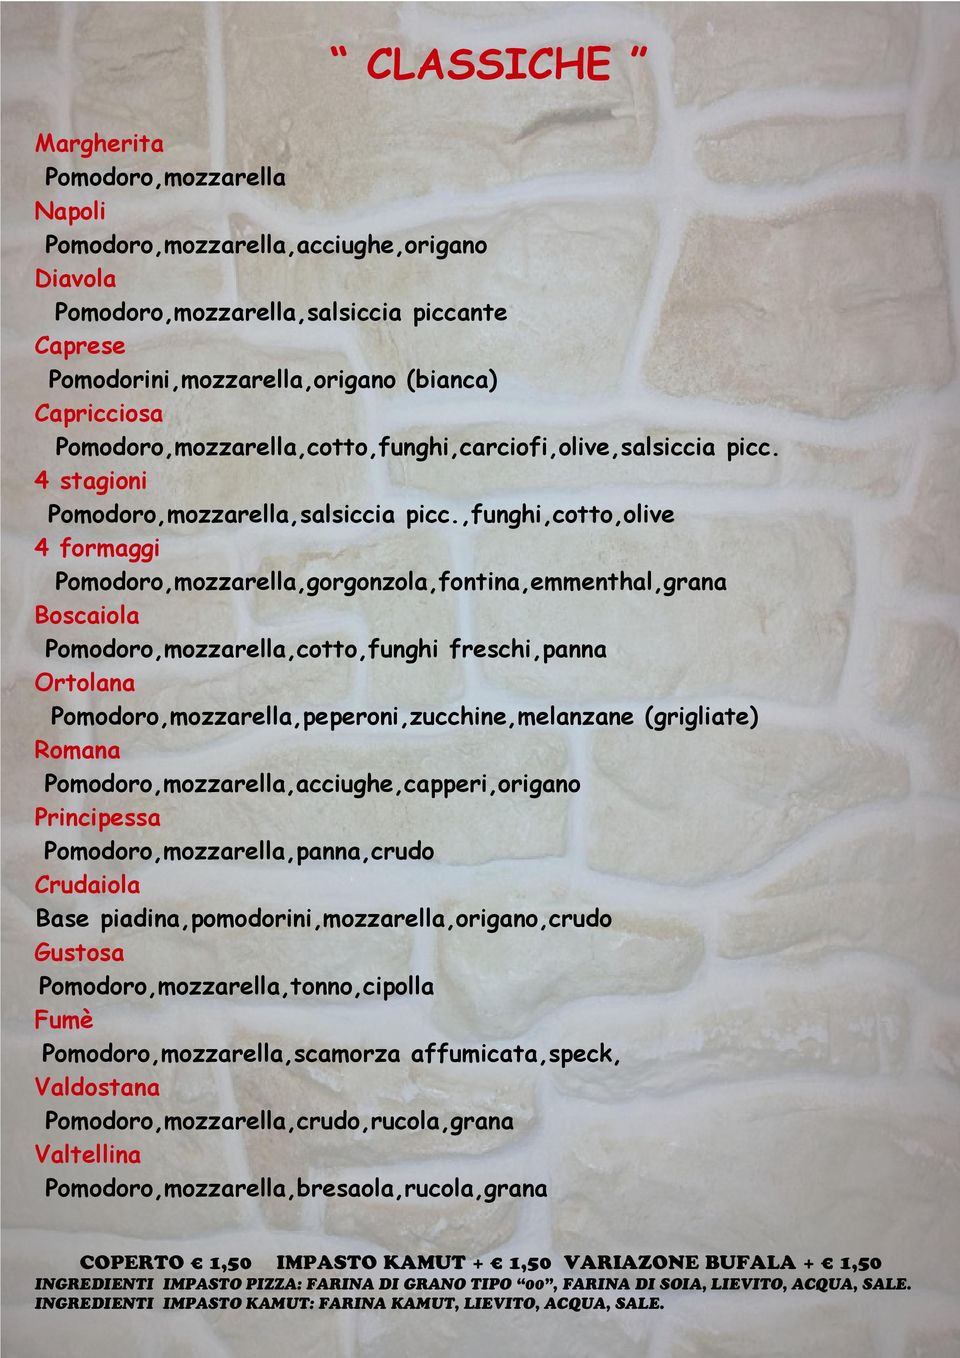 ,funghi,cotto,olive 4 formaggi Pomodoro,mozzarella,gorgonzola,fontina,emmenthal,grana Boscaiola Pomodoro,mozzarella,cotto,funghi freschi,panna Ortolana Pomodoro,mozzarella,peperoni,zucchine,melanzane